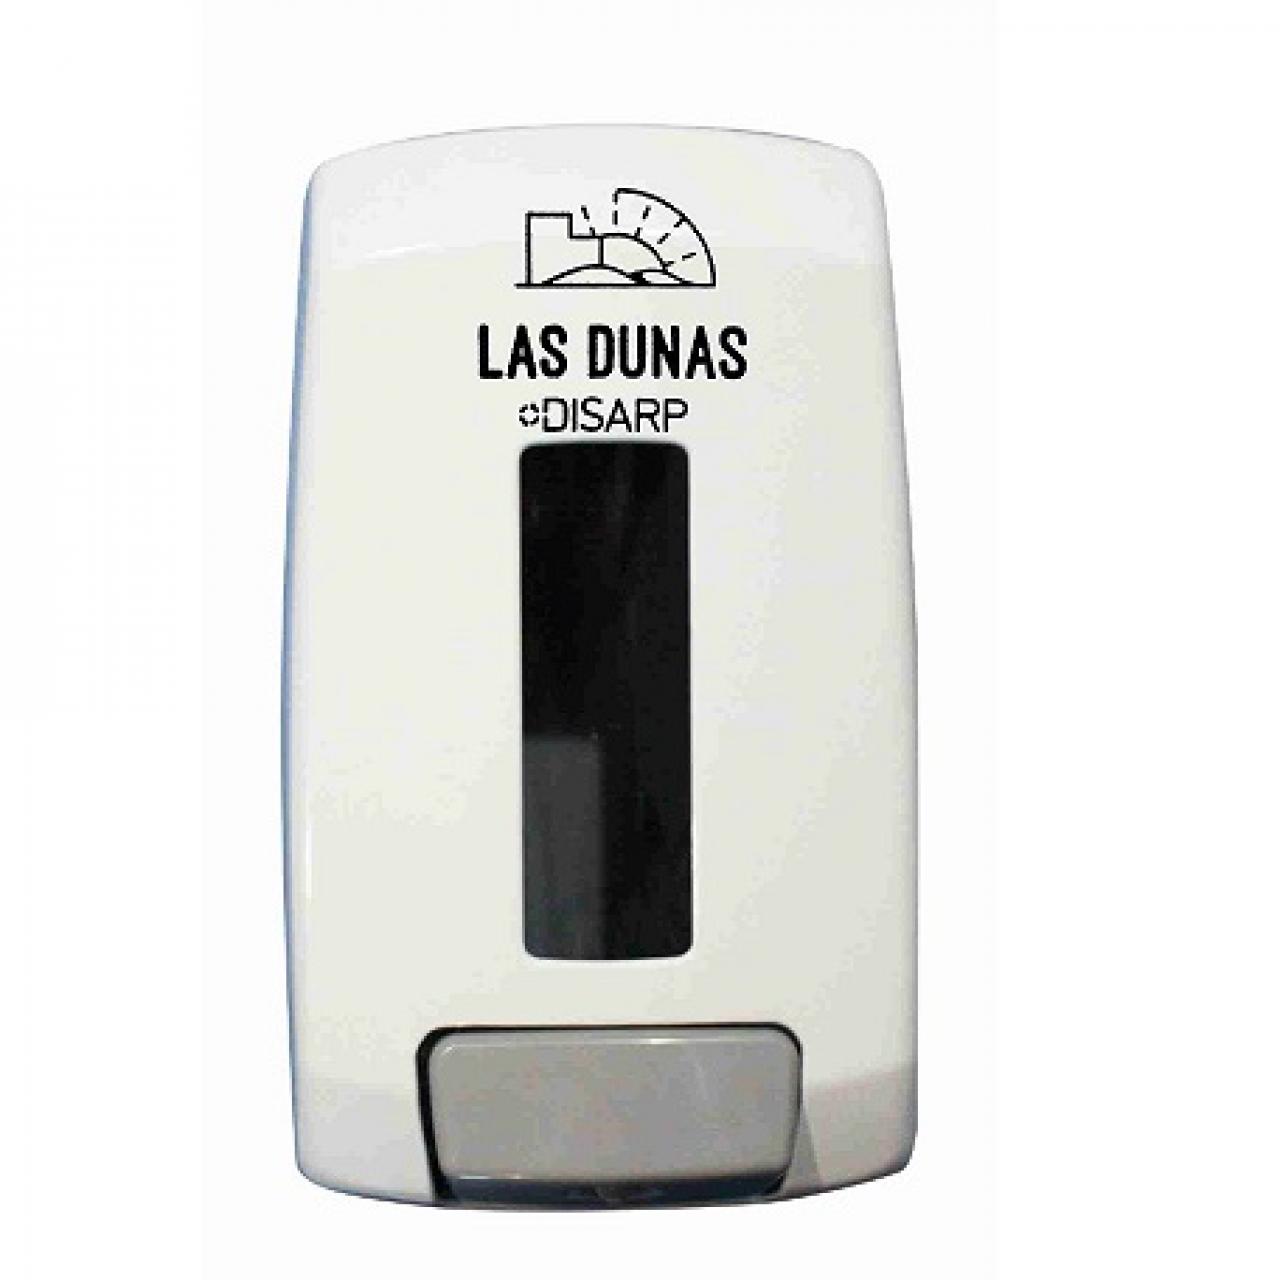 Dispensador dosificador de solución hidroalcoholica o jabón 1 litro modelo LAS DUNAS